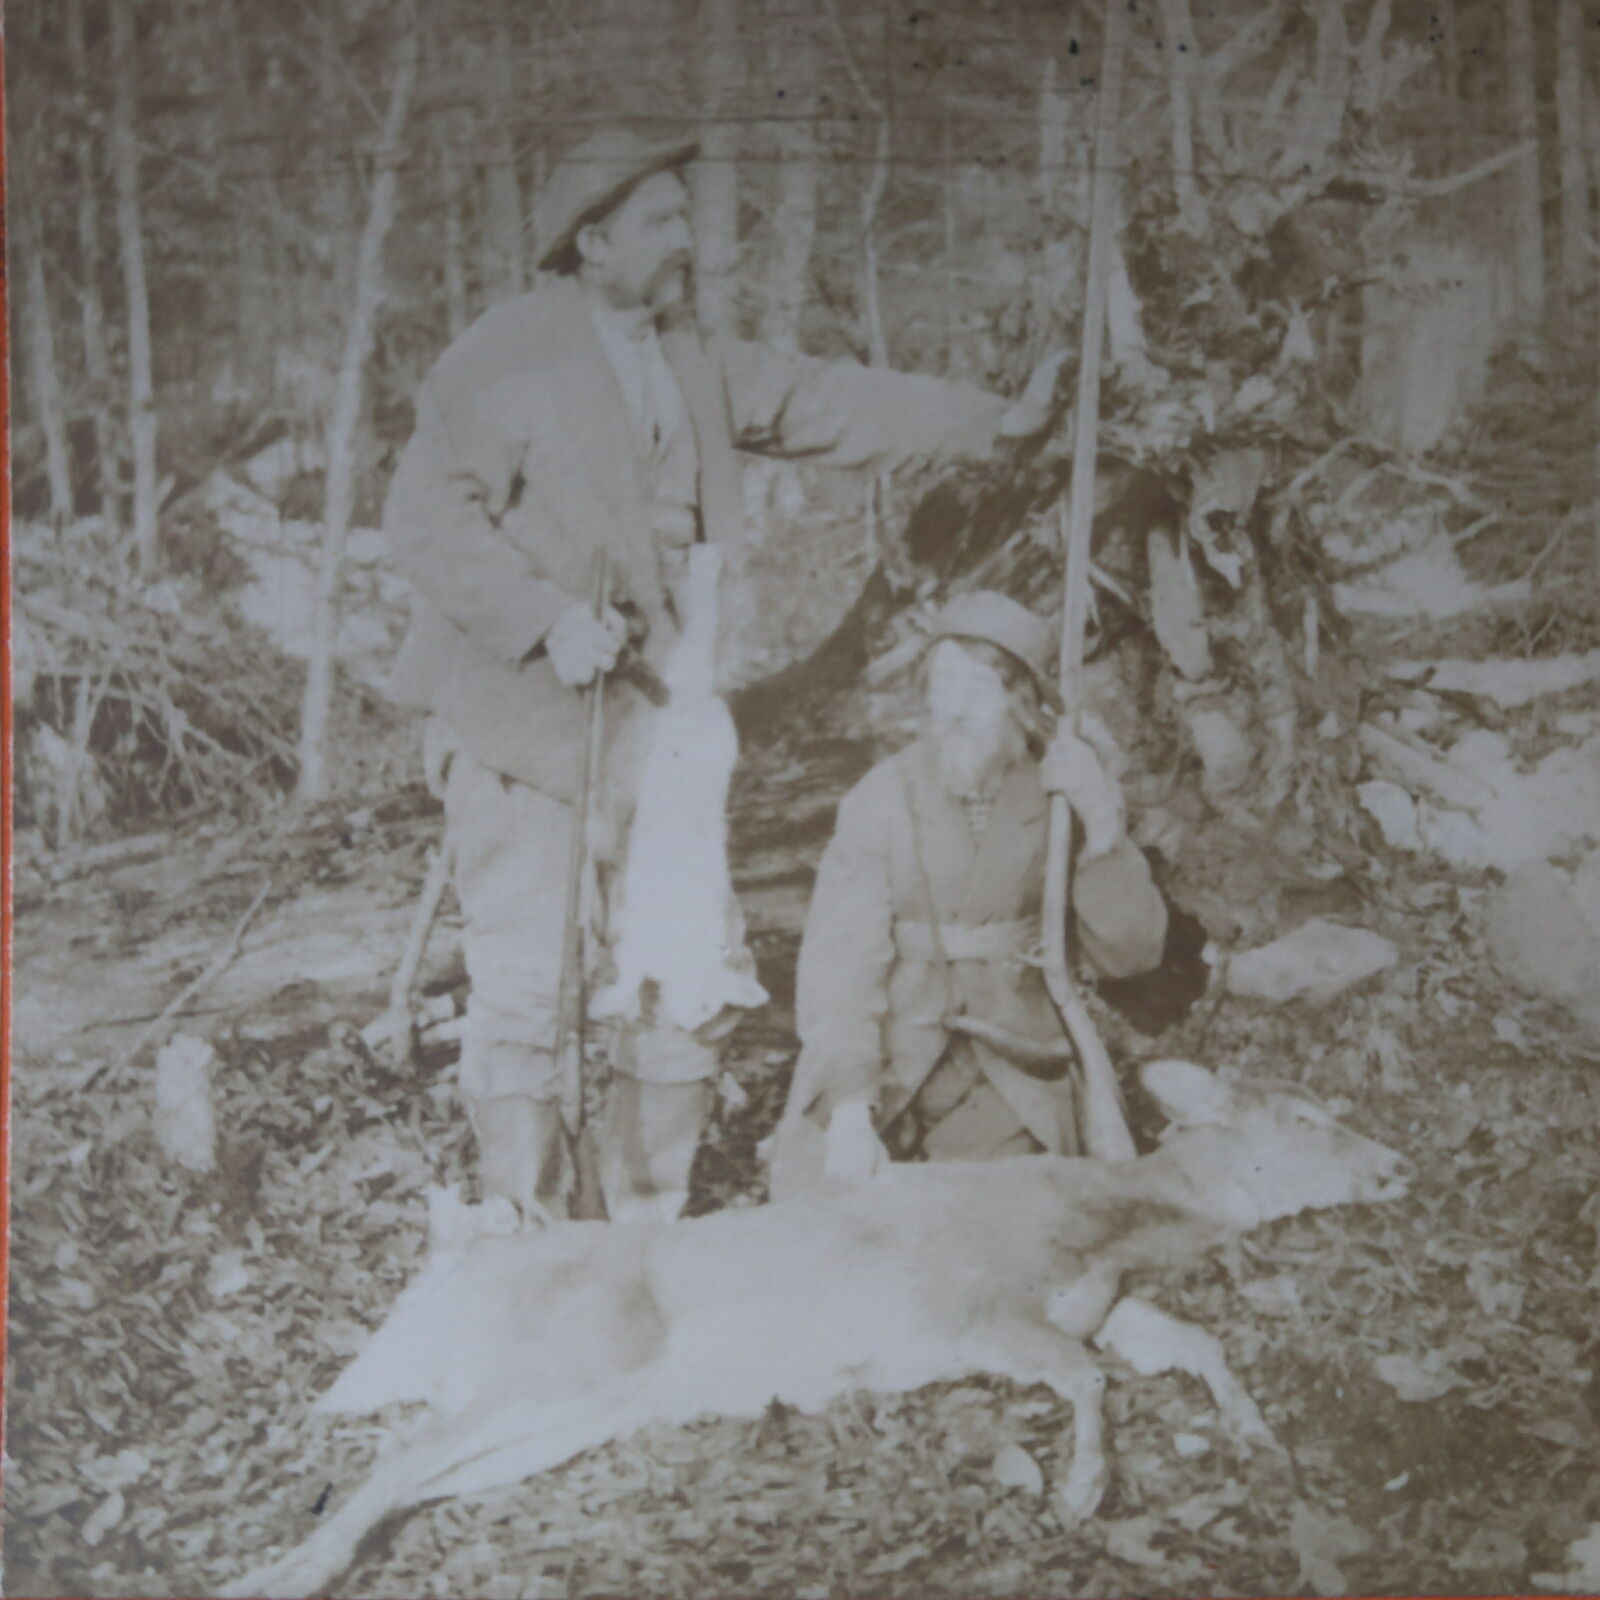 c1900 Hunters w/Game Deer & Rabbit in Wooded Area Stereoview Kilburn Bros 70